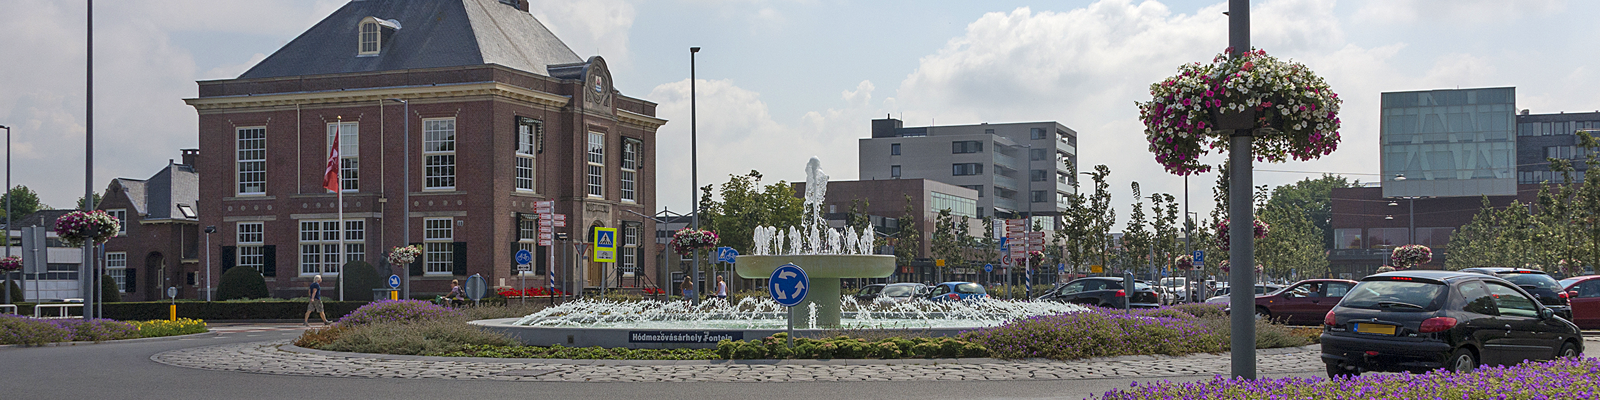 De fontein in Hoofddorp centrum